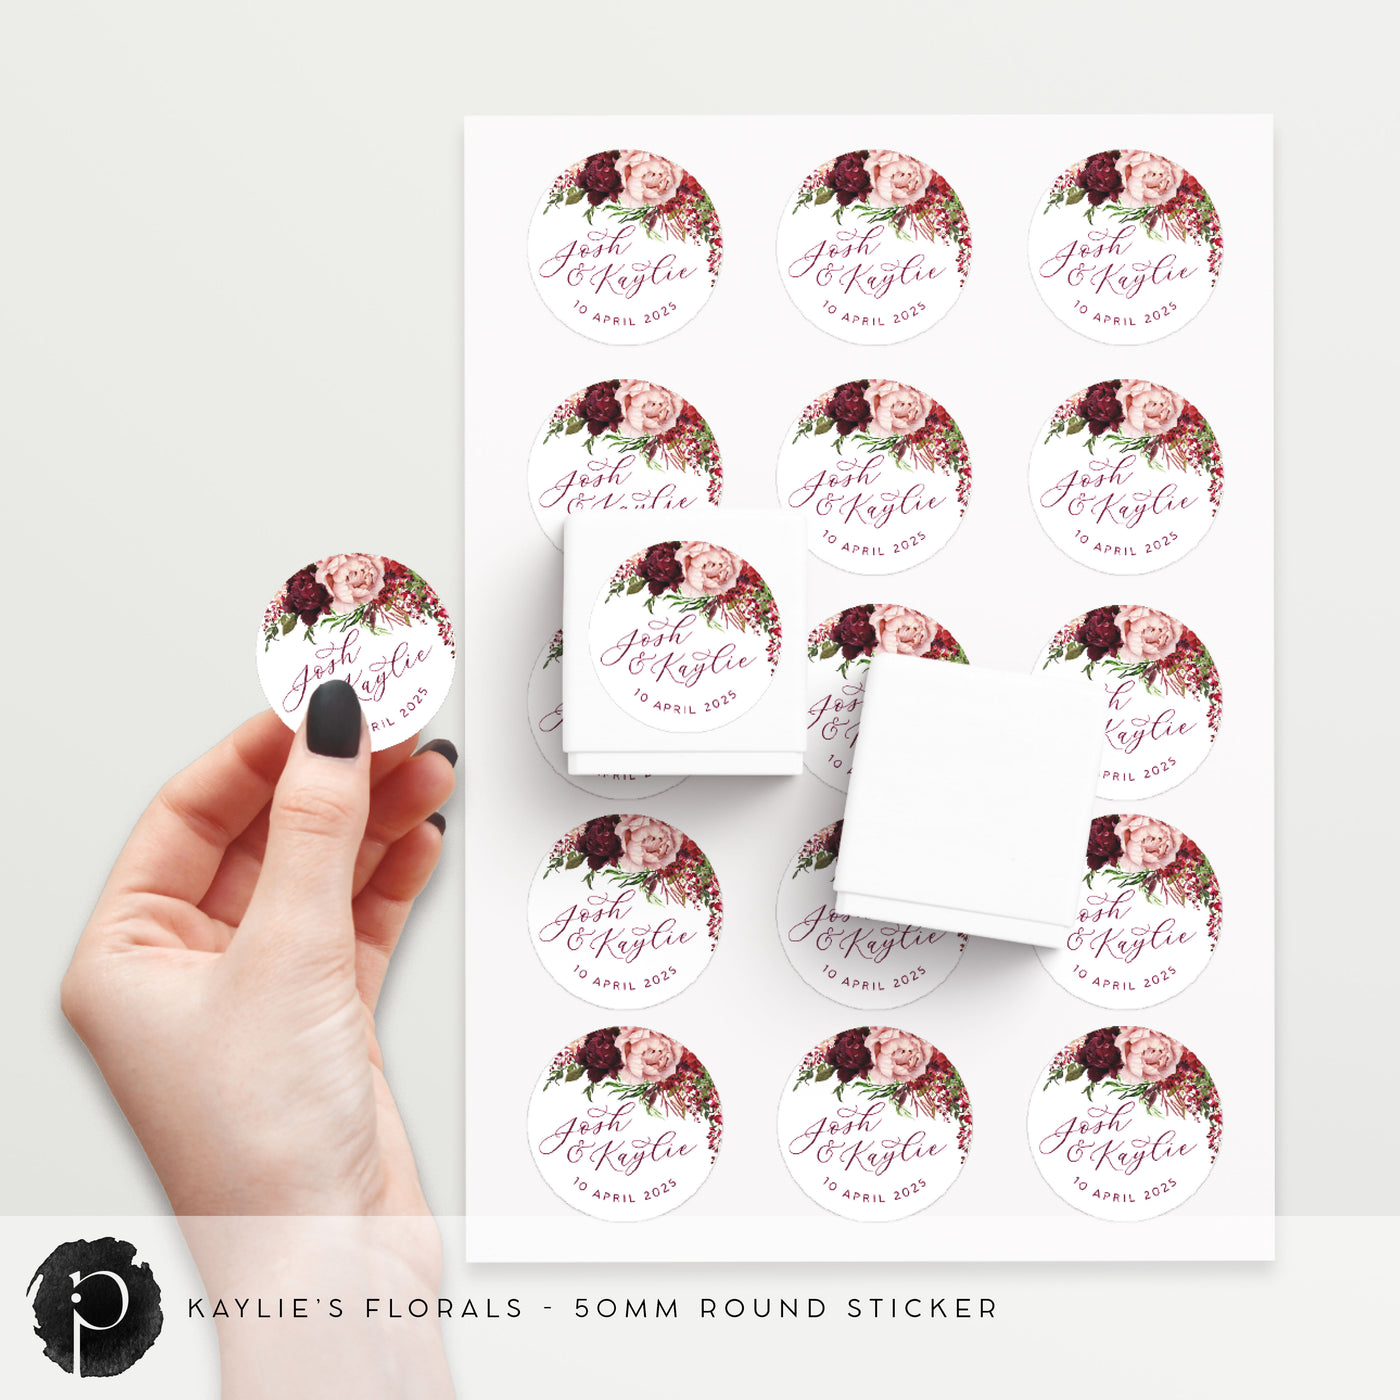 Kaylie's Florals - Stickers/Seals